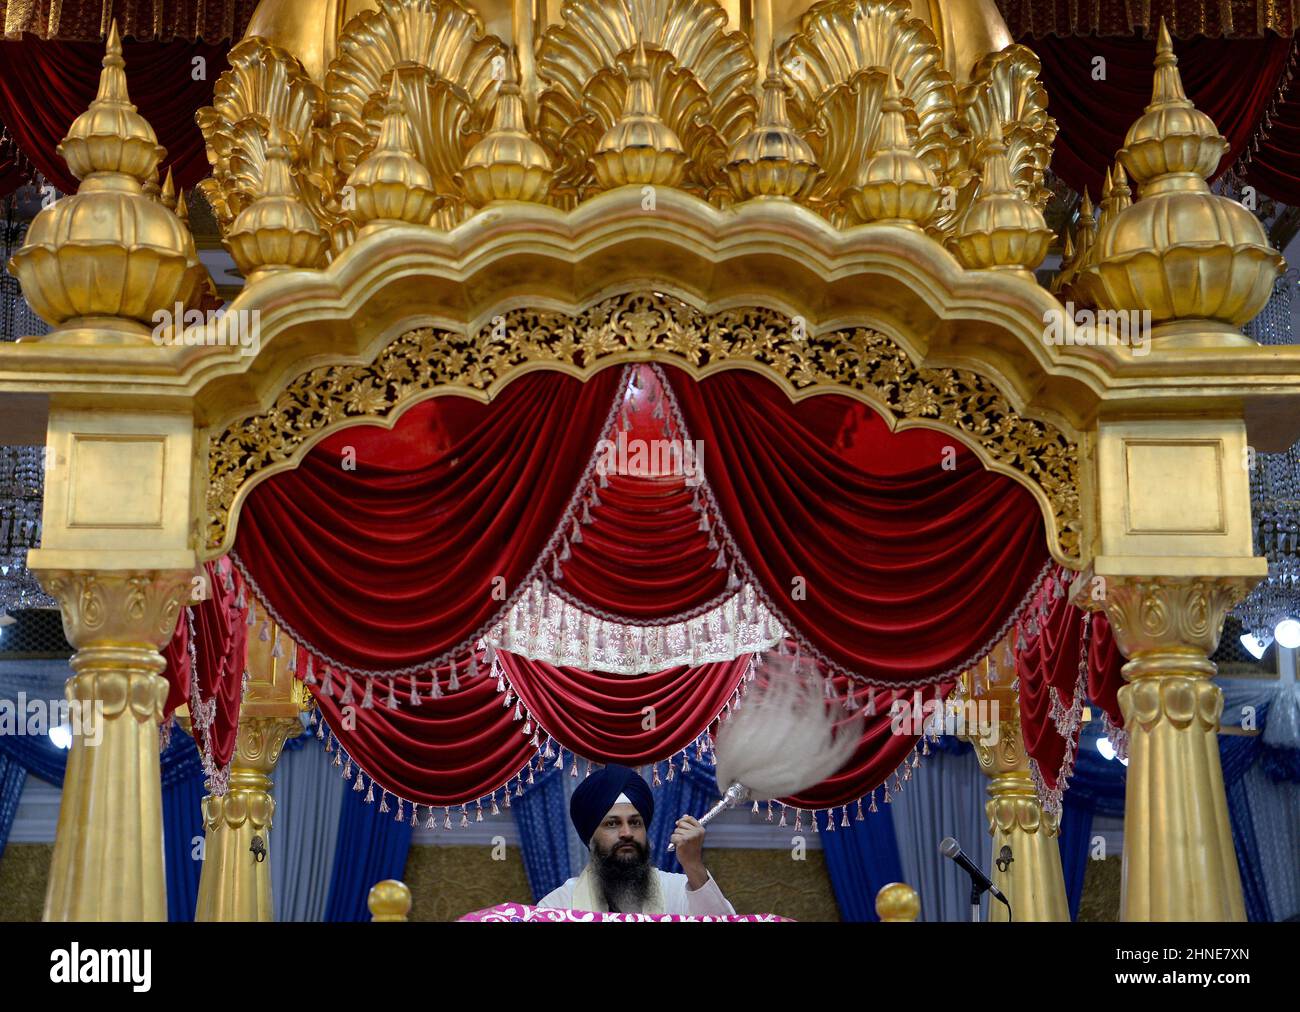 Eine Nahaufnahme eines Sikh Granthi, der den Chaur sahib schwenkt, der verwendet wird, um den Guru Granth Sahib JI, die heilige Schrift in der Sikh Religion, zu fächern. Der spirituelle Server organisiert die täglichen Gottesdienste und liest vom Guru Granth Sahi in Bangkoks Gurudwara Siri Guru Singh Sabha (Sikh Tempel) in Little India. Der prominente Sikh-Tempel mit goldener Kuppel wurde 1932 erbaut, ein religiöses Heiligtum, ein Ort der Anbetung, für viele der nordwestlichen indischen Sikhs, die in Thailand leben. Es gilt als der zweitgrößte Sikh-Tempel außerhalb Indiens. Stockfoto